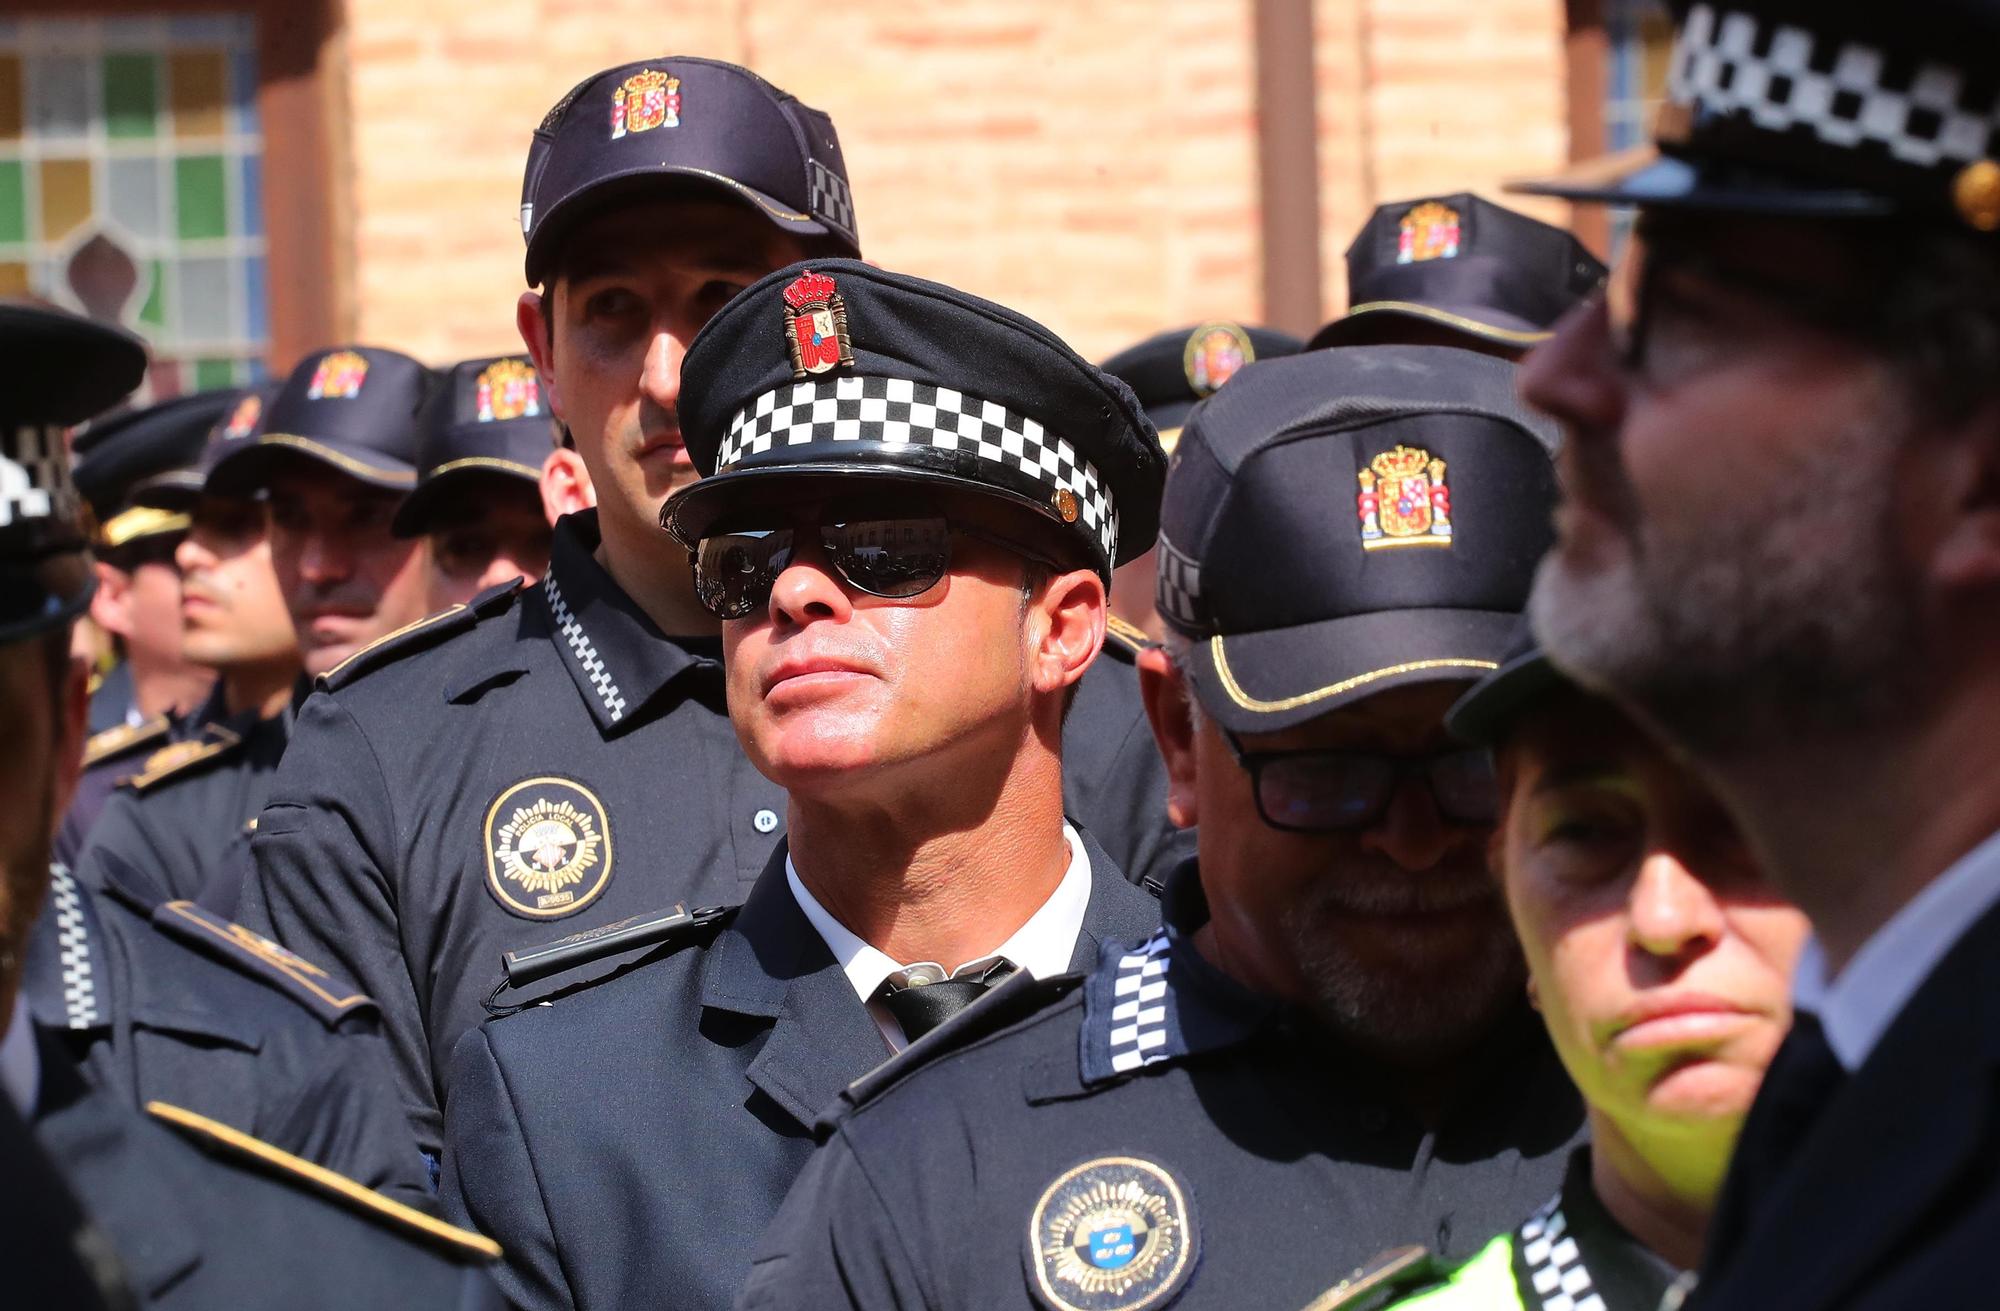 Entrega de condecoraciones a los policias locales de la Comunitat Valenciana